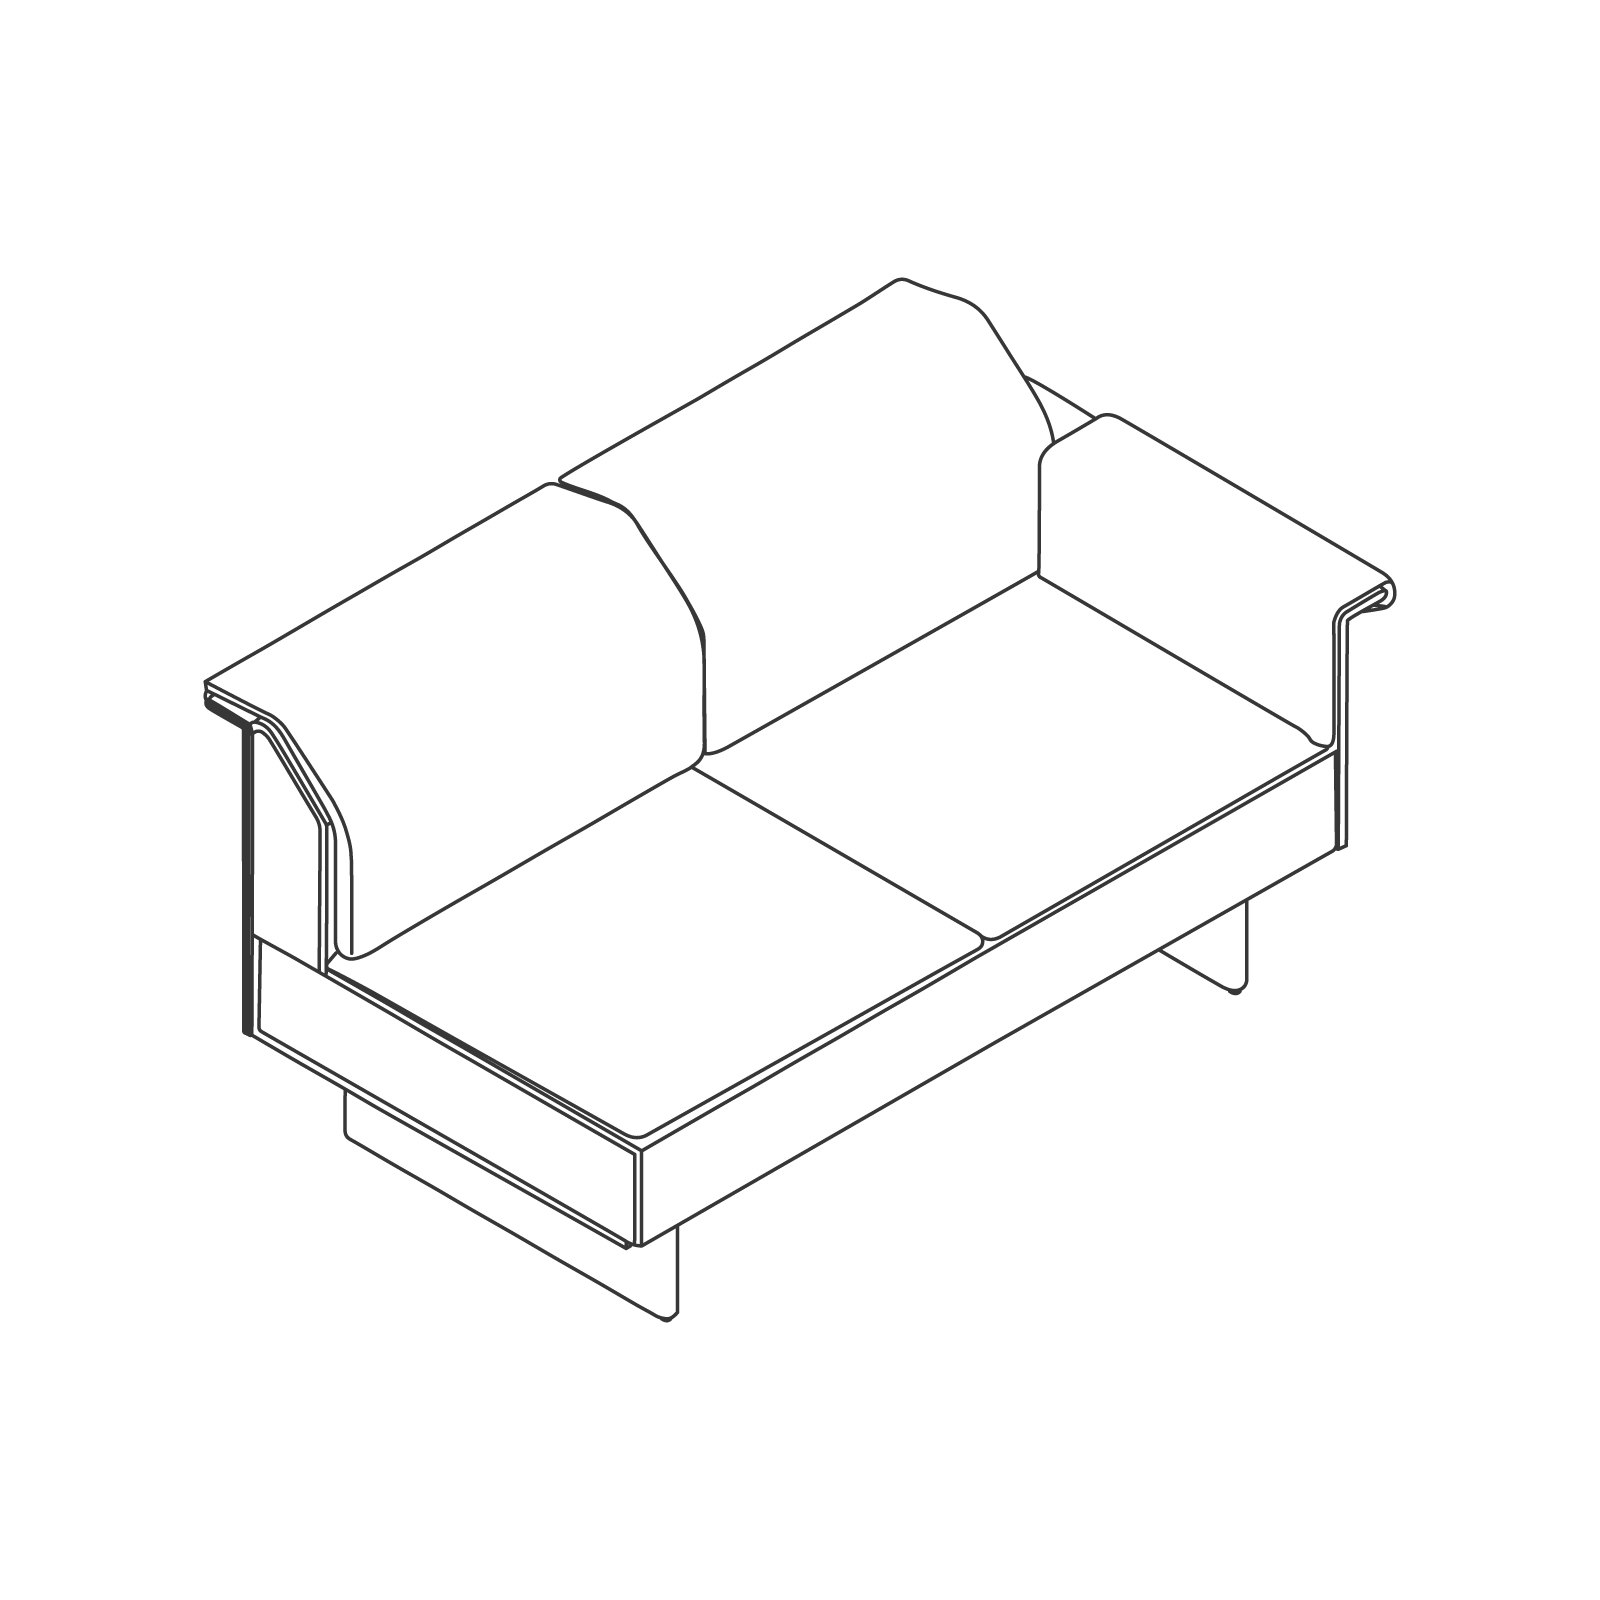 线描图 - Mantle长沙发–左侧扶手